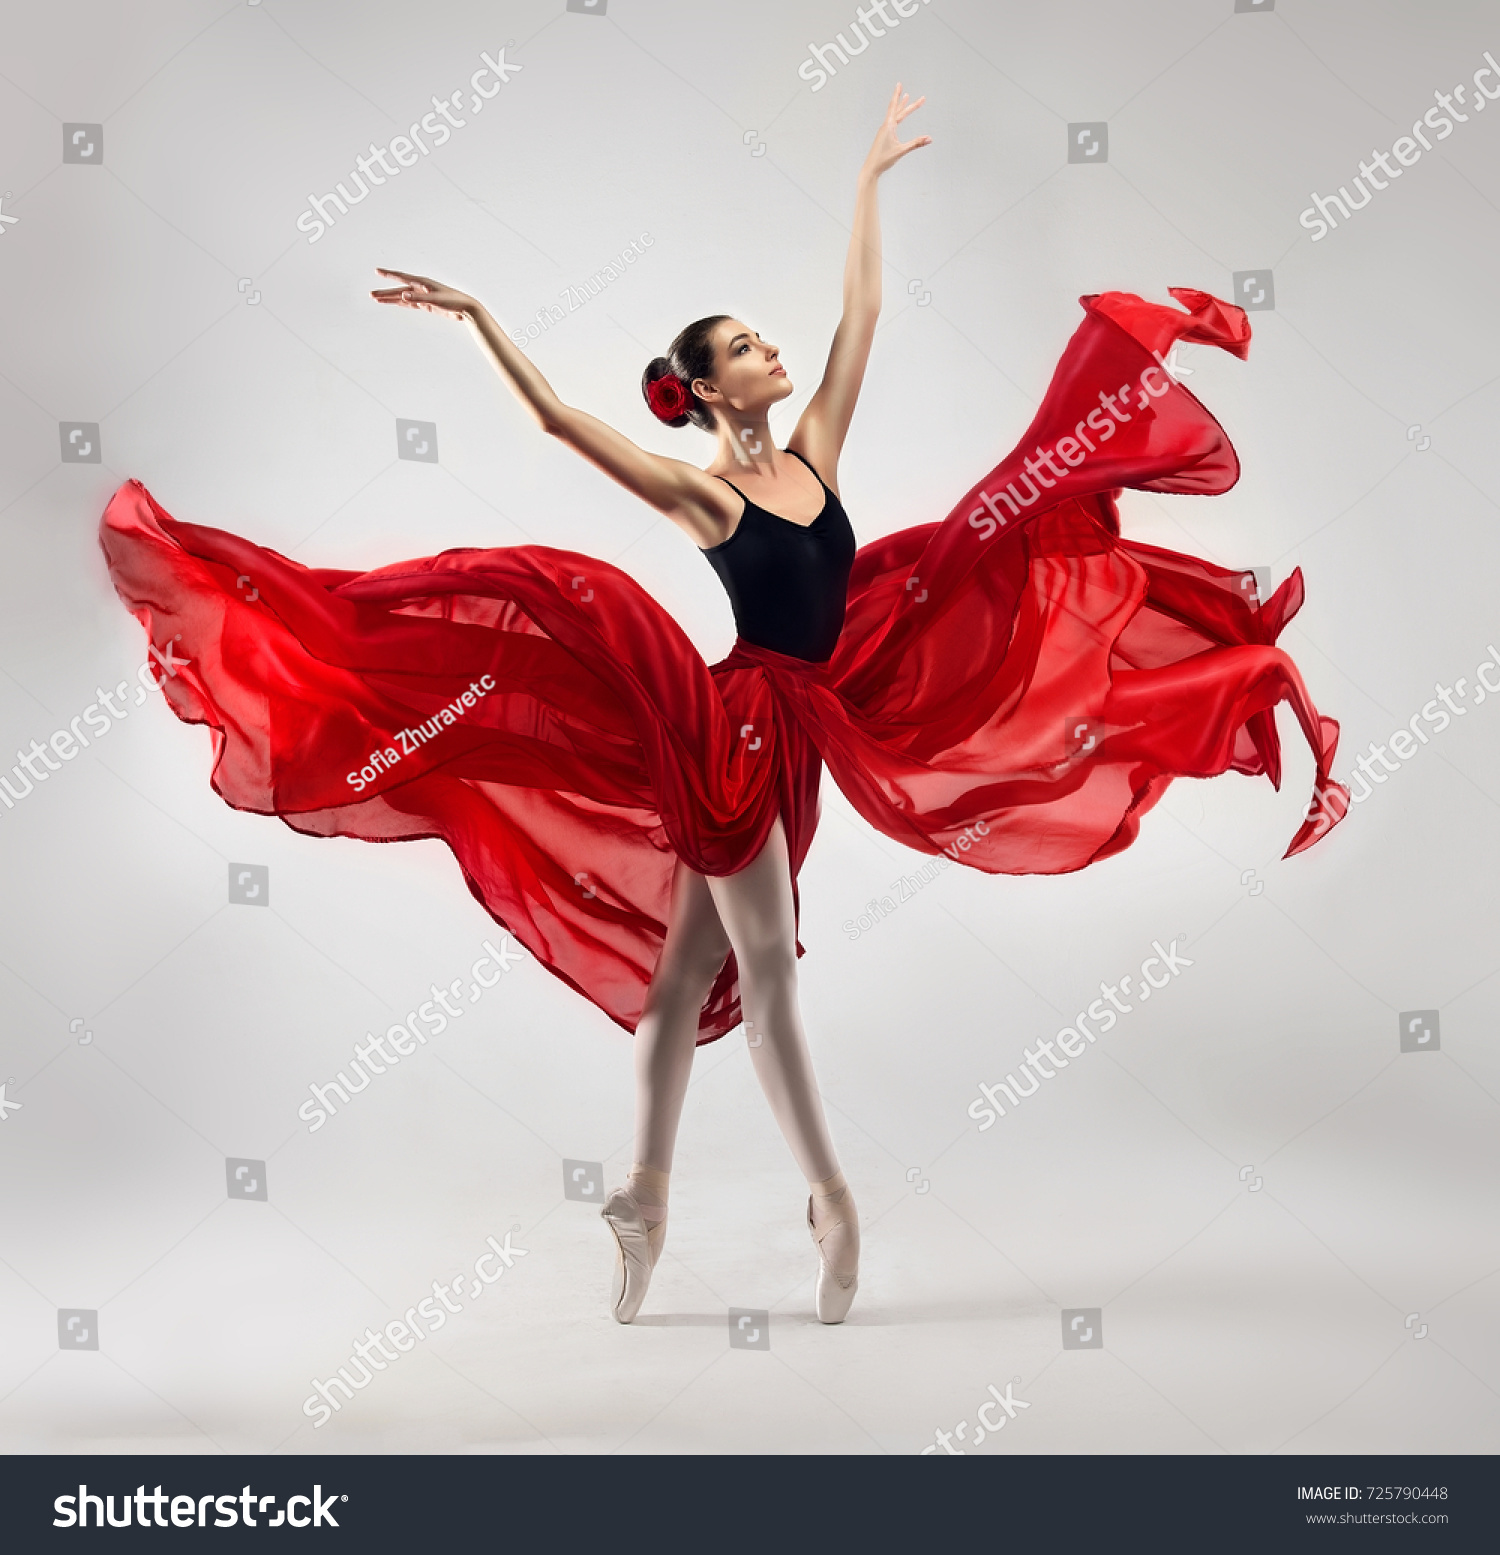 Ballerina. Ung yndefuld kvinde ballet danser, (rediger nu) 725790448